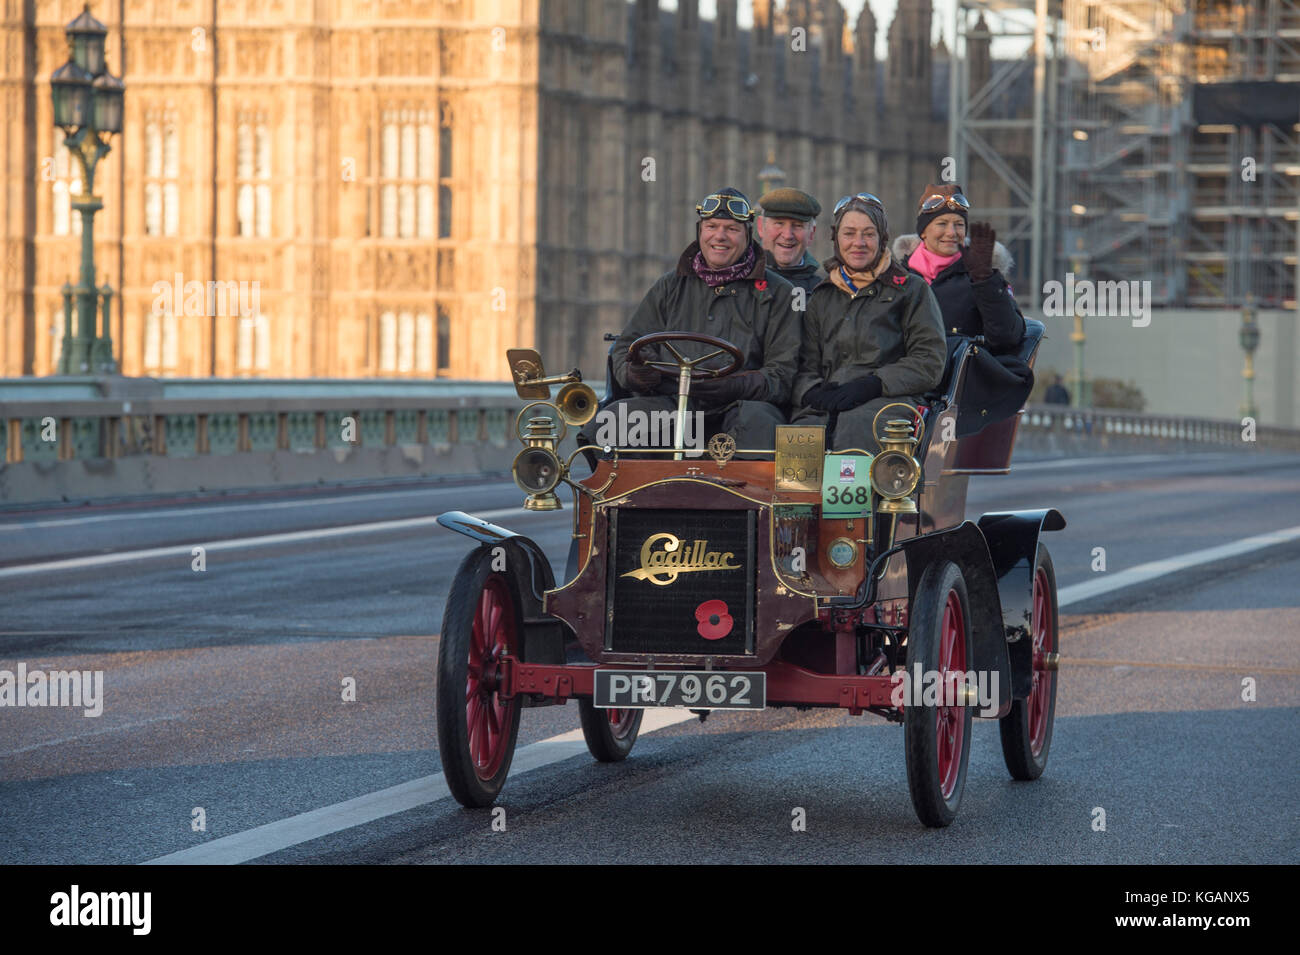 5 novembre 2017. Bonhams de Londres à Brighton, la course de voiture de vétéran, la plus longue course automobile au monde, 1904 Cadillac sur le pont de Westminster. Banque D'Images